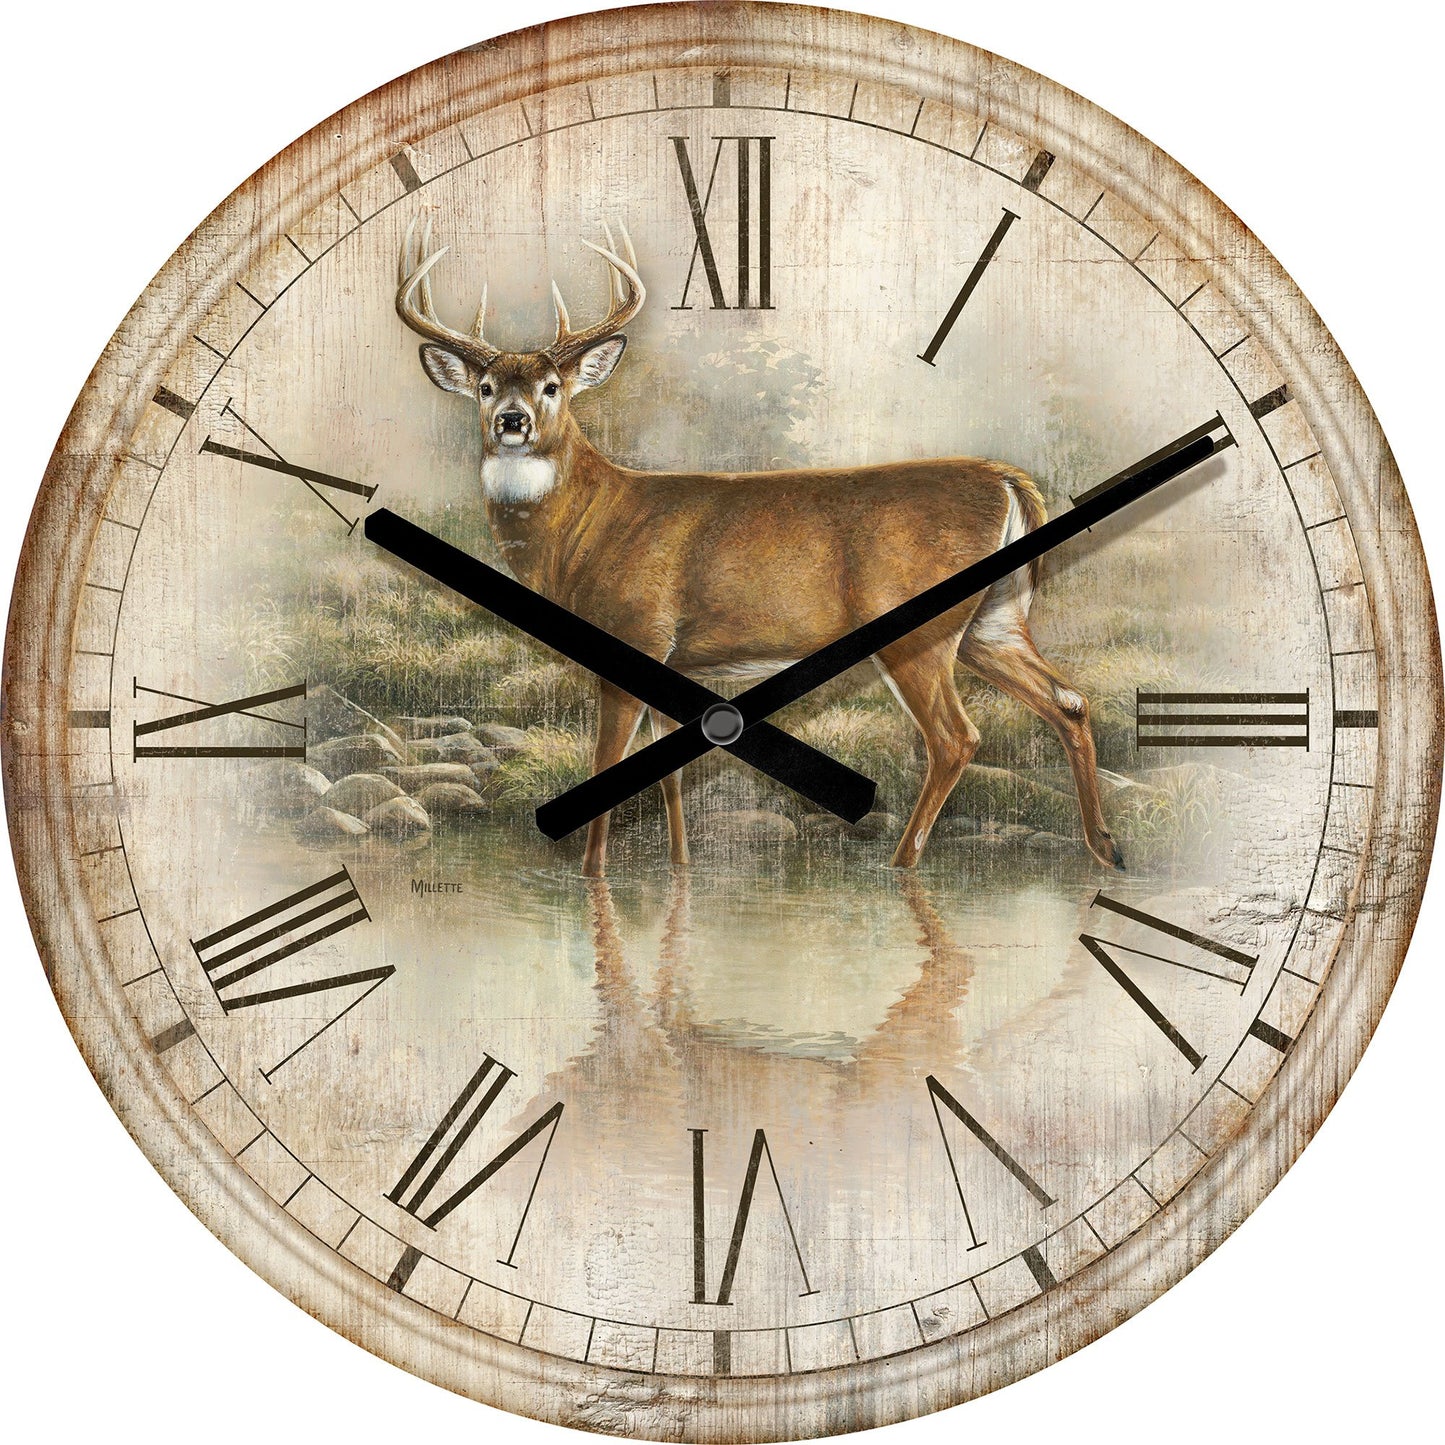 Tranquil Waters—Deer 21" Round Clock - Wild Wings